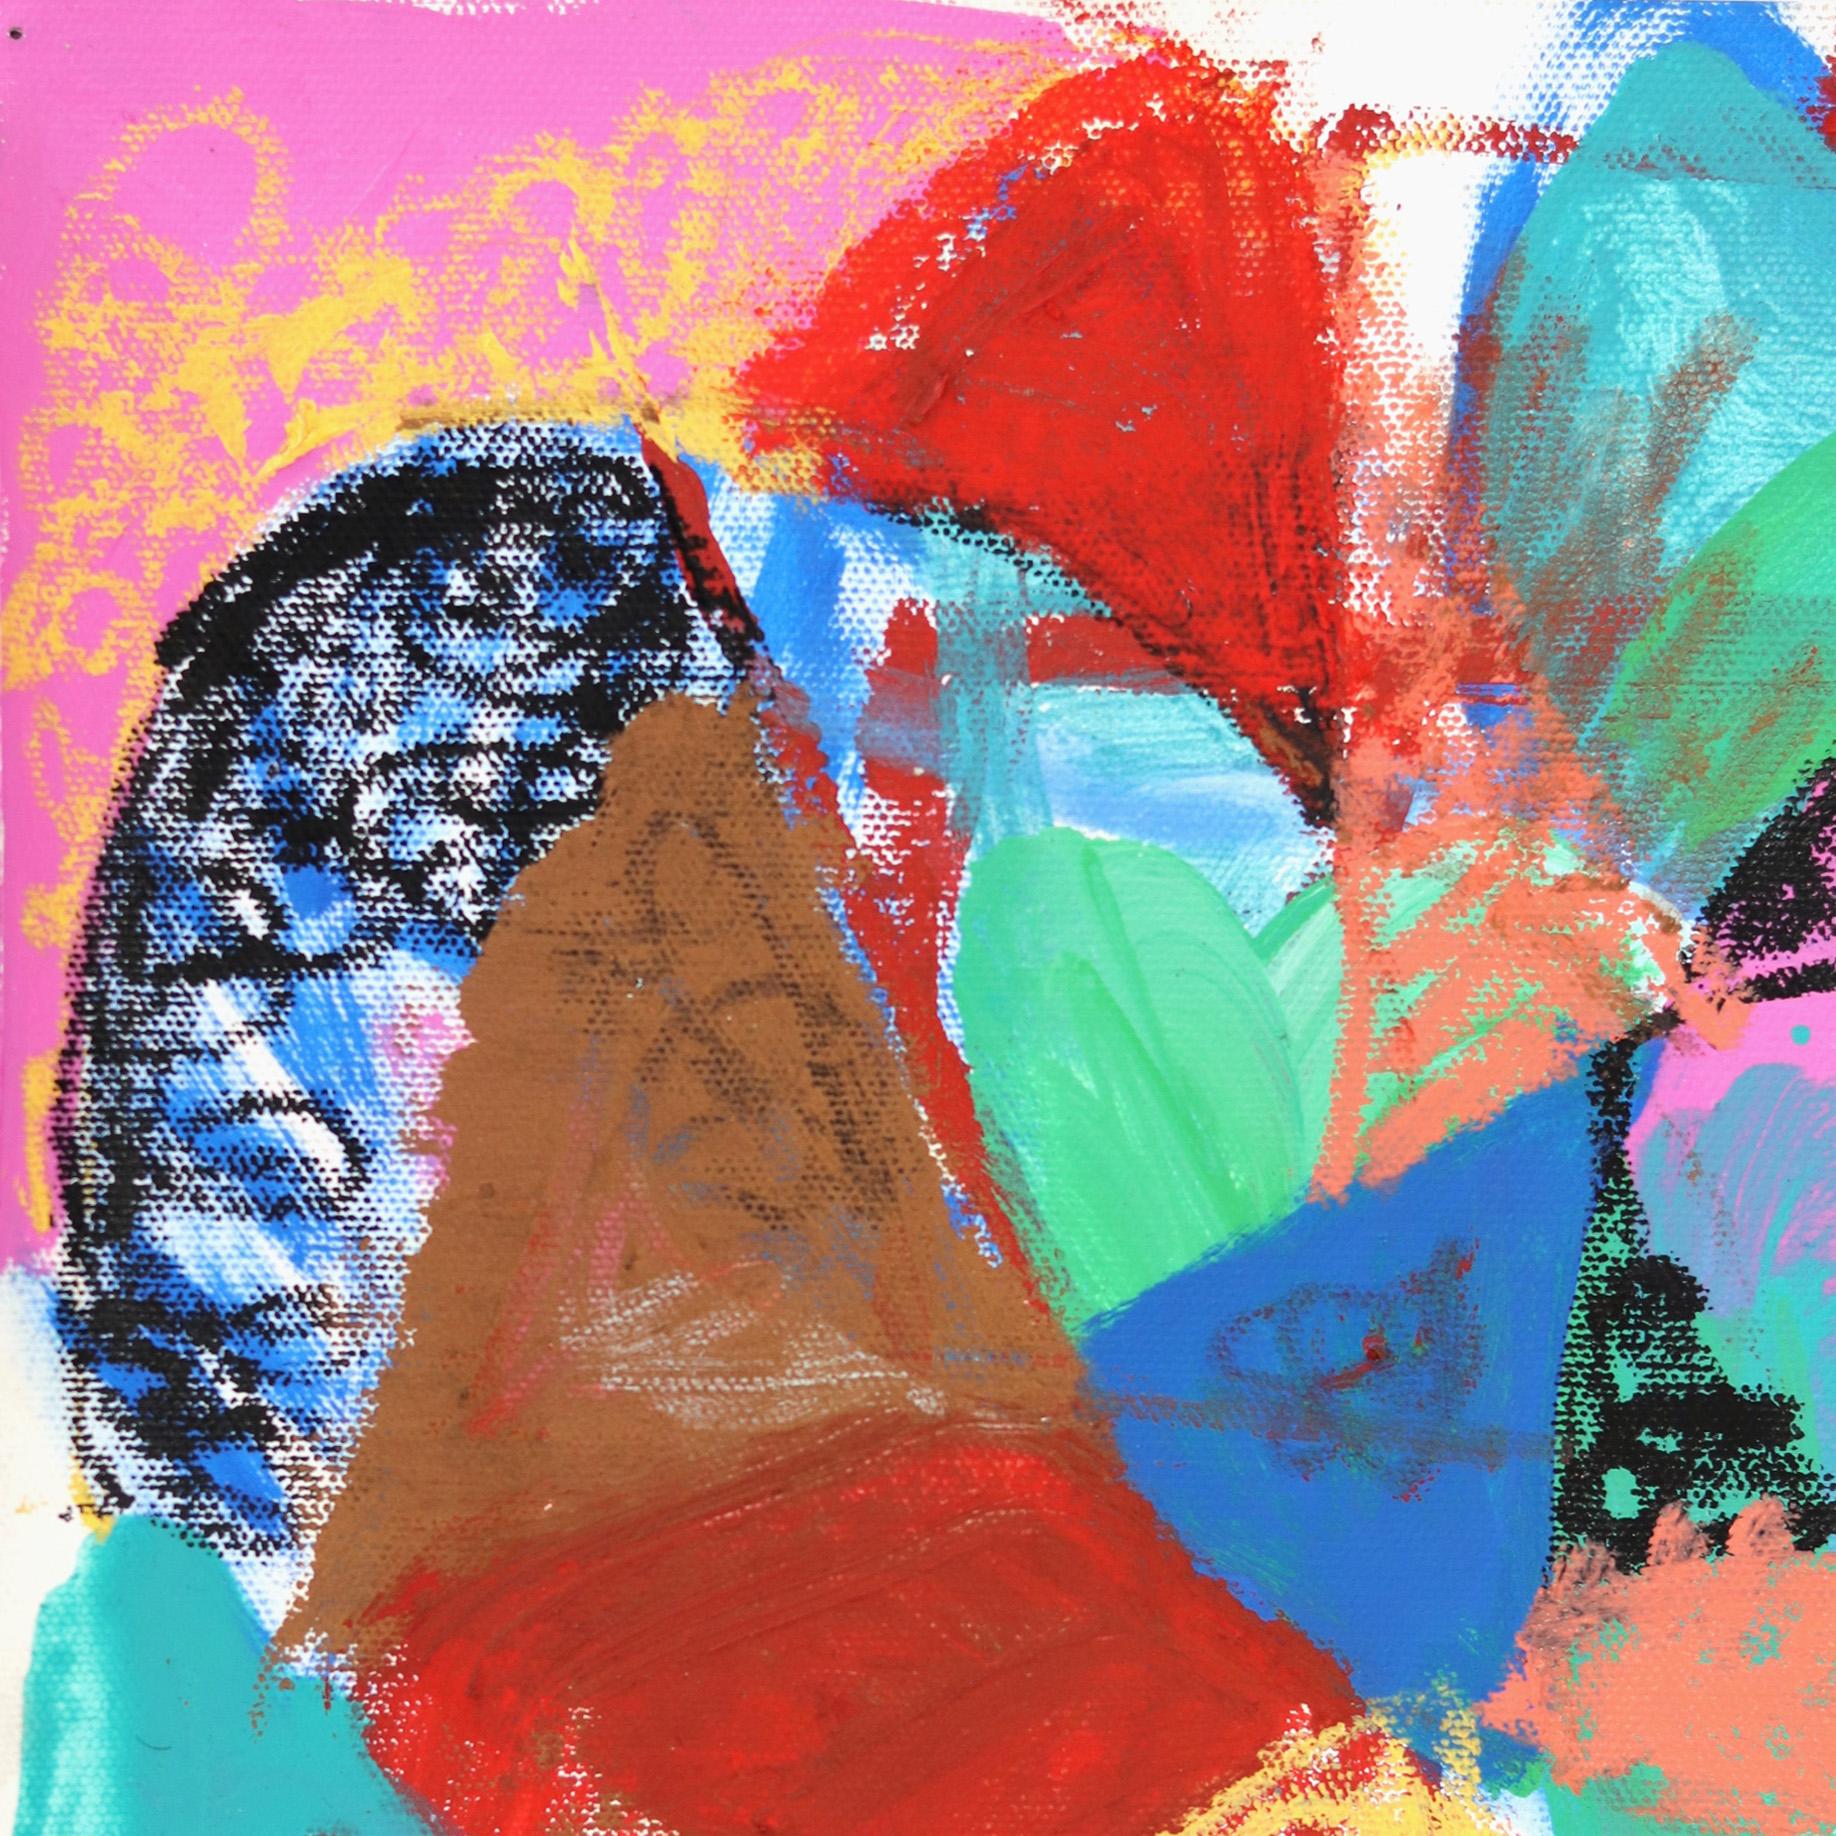 Ich fühle mich wie ein Vogelmann, Finna Get My Shine On – Painting von Danny Brown